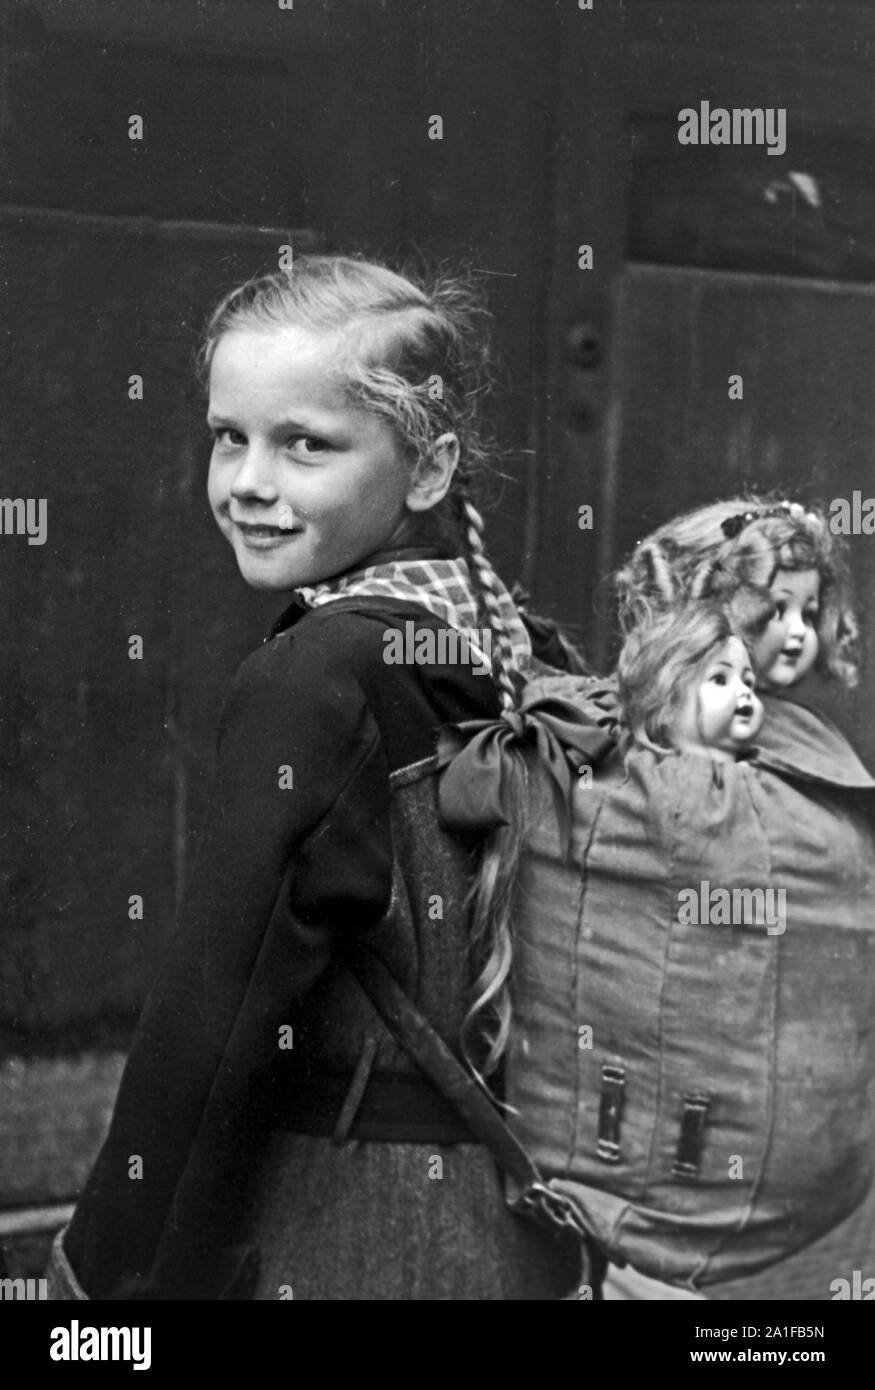 Mädchen mit ihrer Puppe im Gepäck auf dem Weg durch das verregnete Berlin, Deutschland 1949. Little girl with her dolls in a backpack on her way throuhgh the rainy Berlin, Germany 1949. Stock Photo